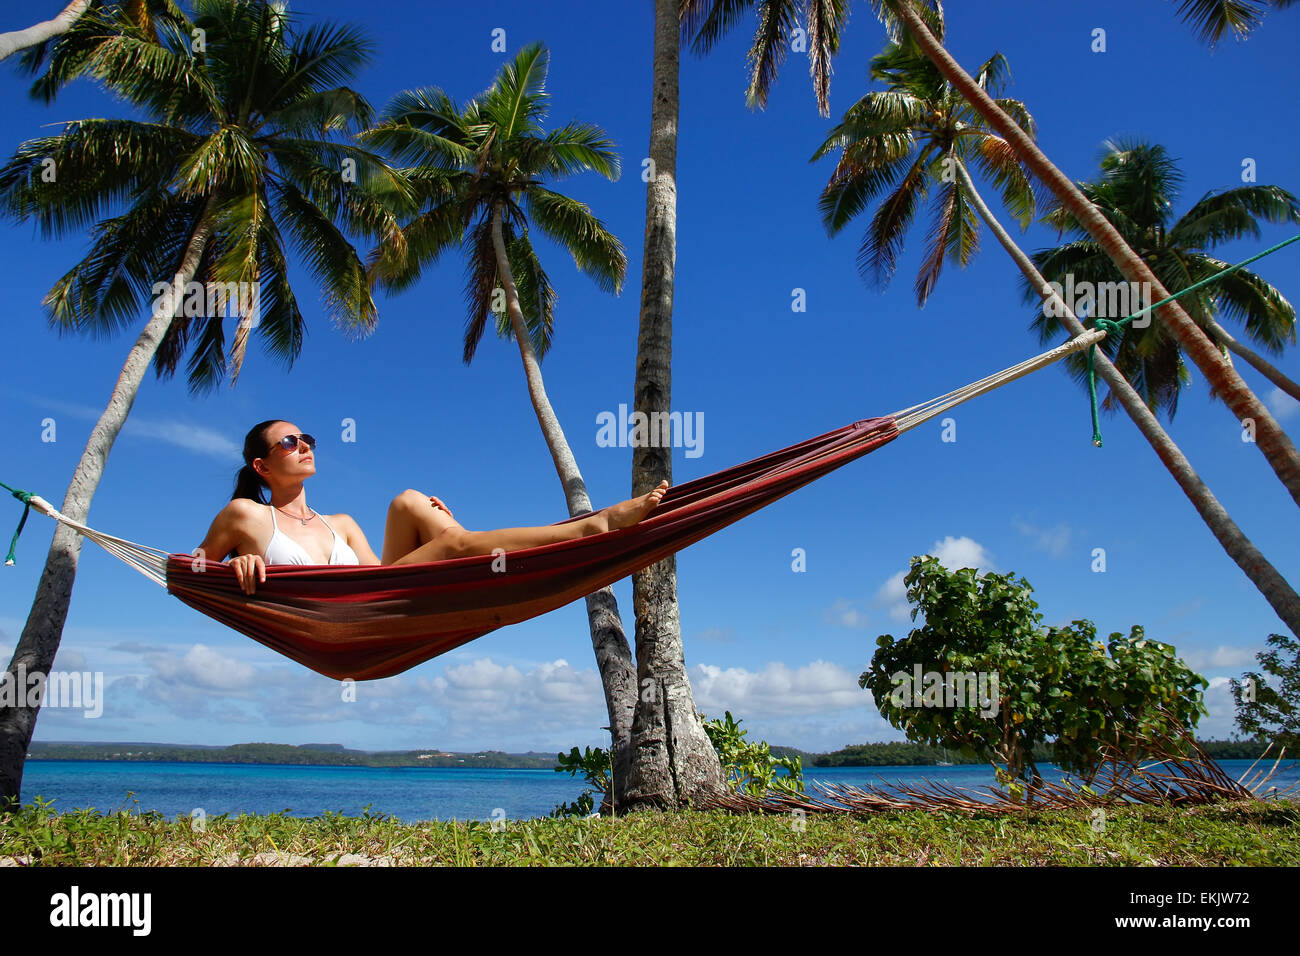 Young woman in bikini sitting in a hammock between palm trees, Ofu island, Vavau group, Tonga Stock Photo